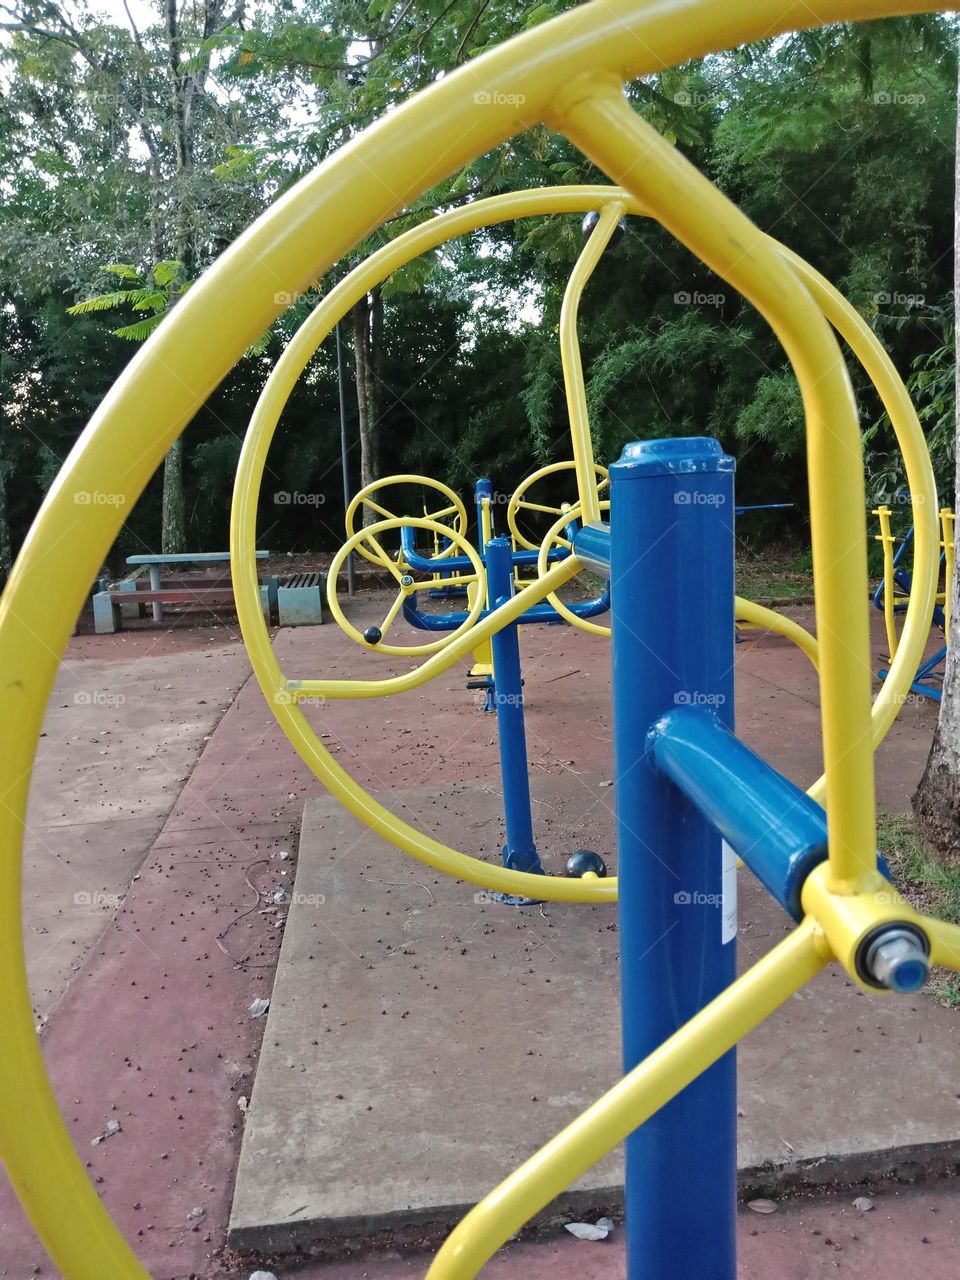 Park gym,yellow round equipment